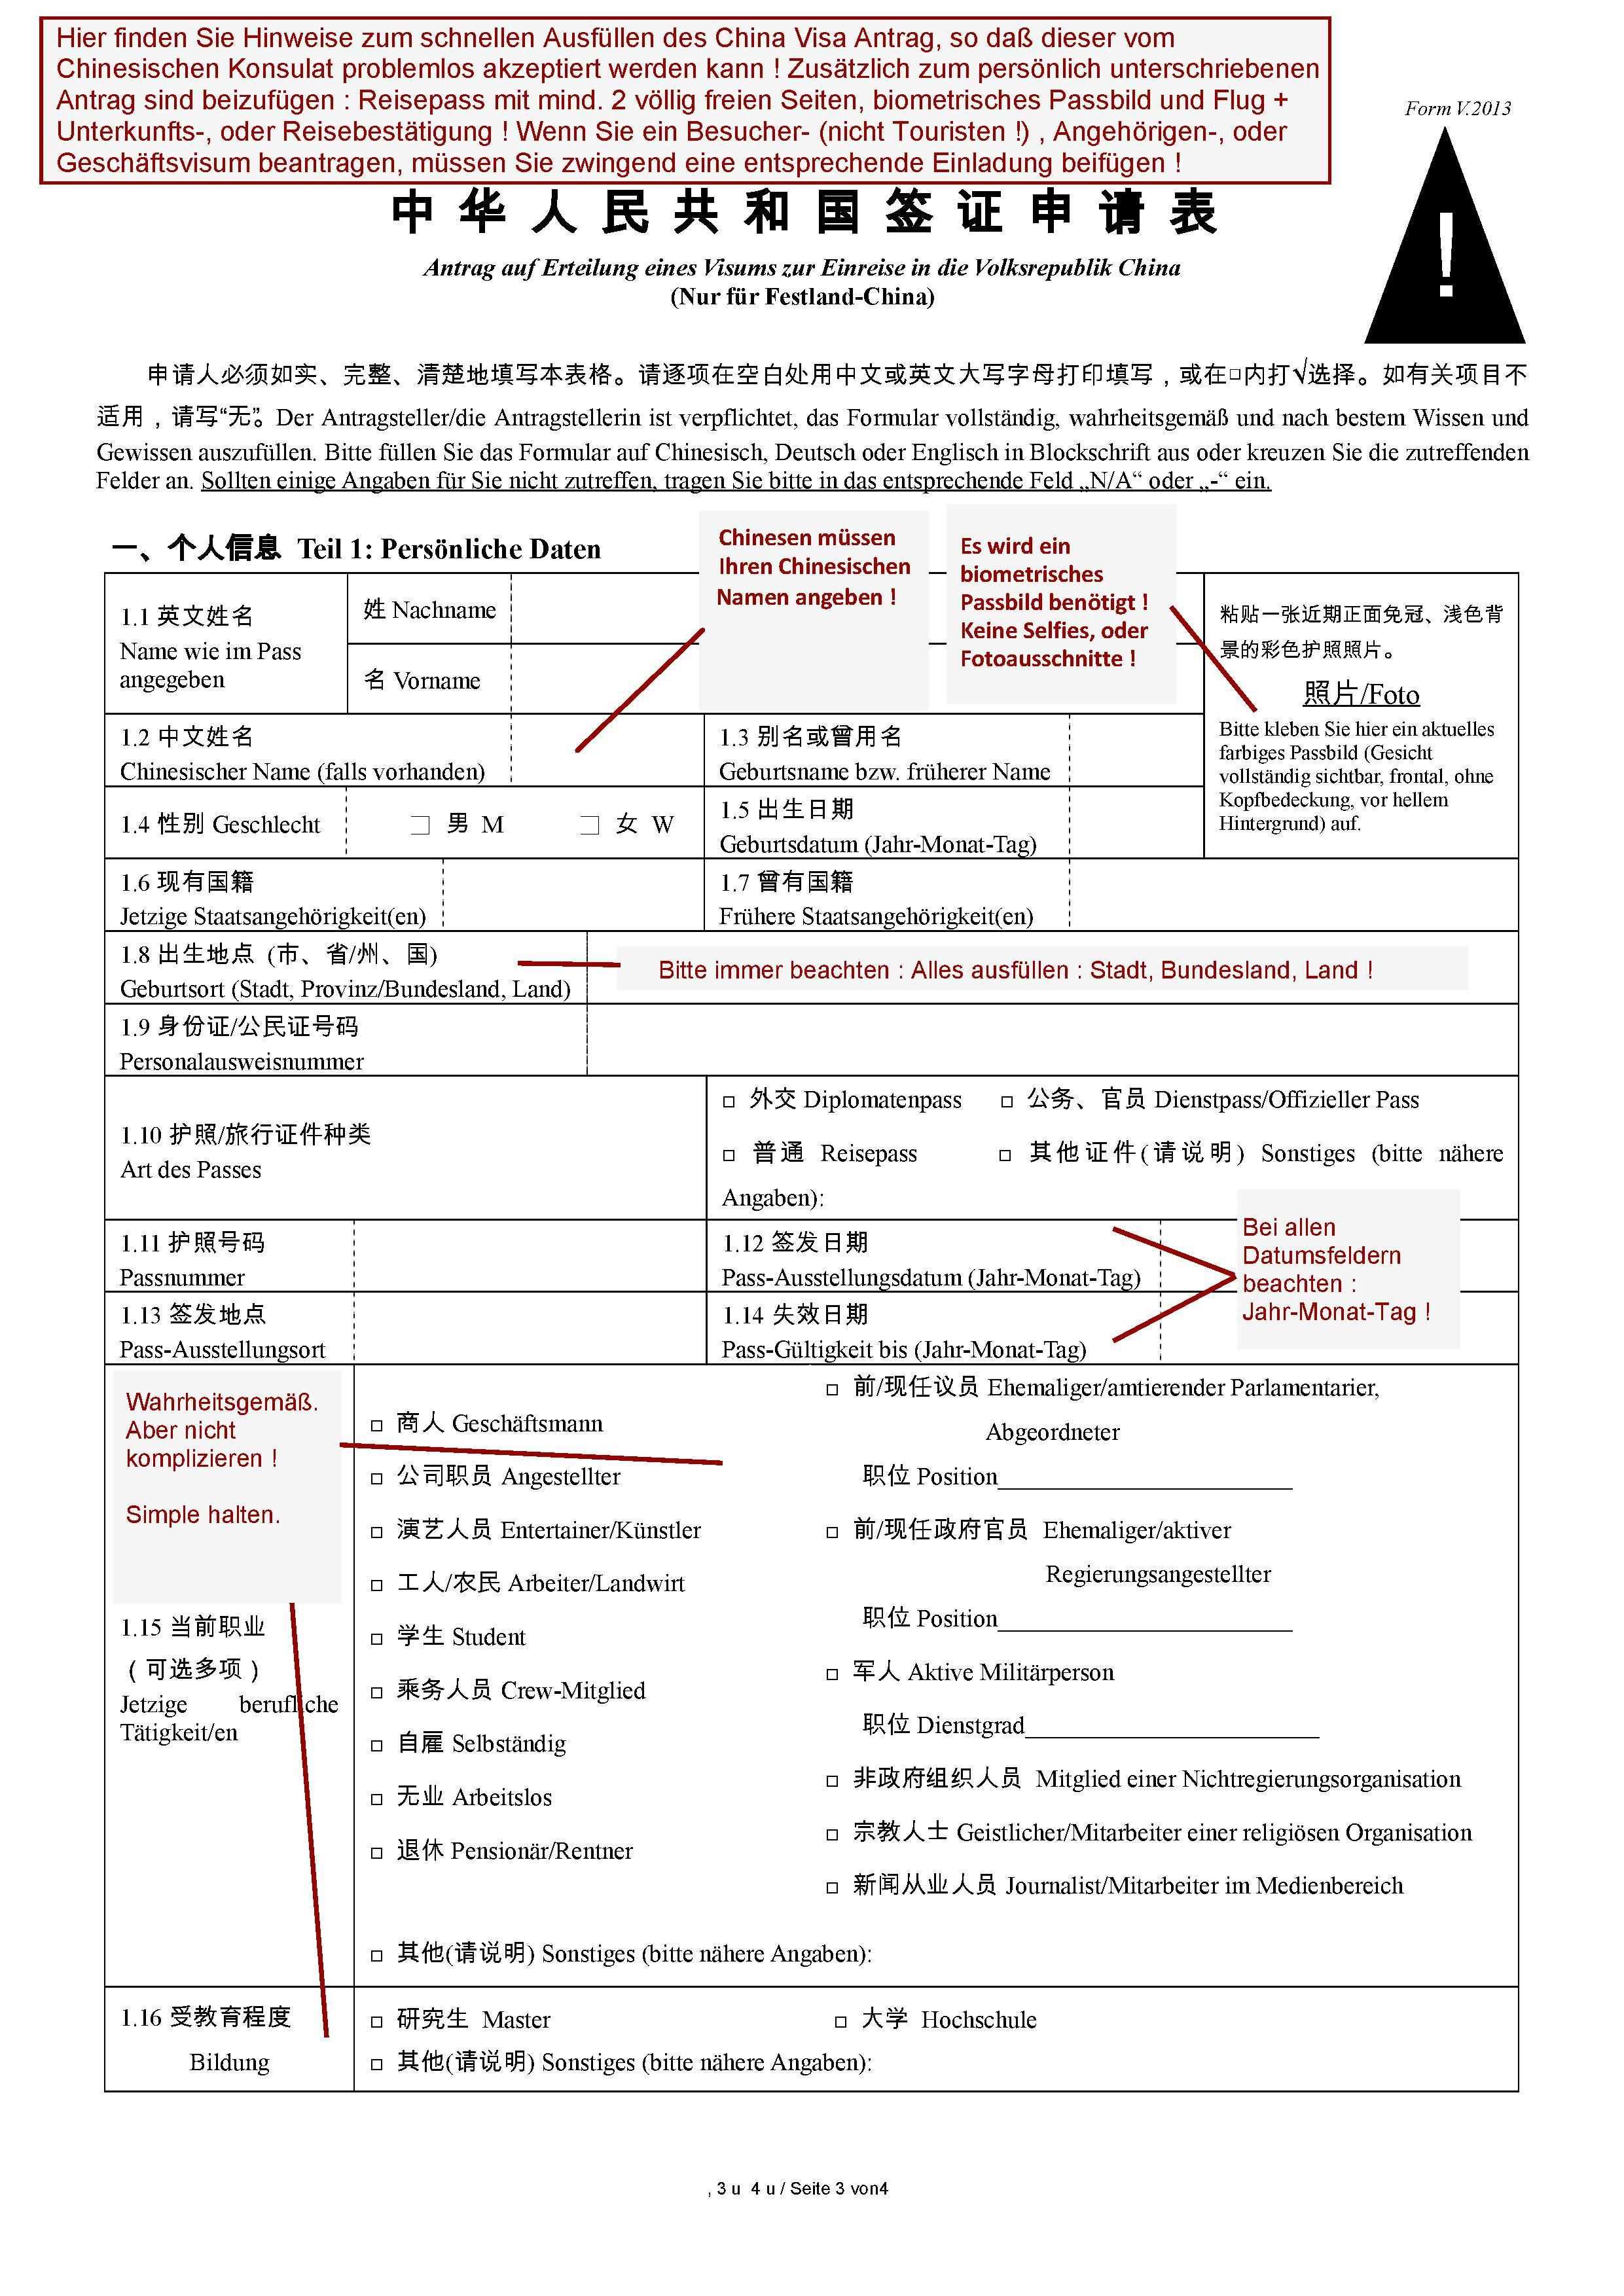 China Visum Antrag Hilfe 1 Was Sie Beim Ausfullen Des China Visum Antrages V 2013 Beachten Sollten China Erste Hilfe Ausfullen